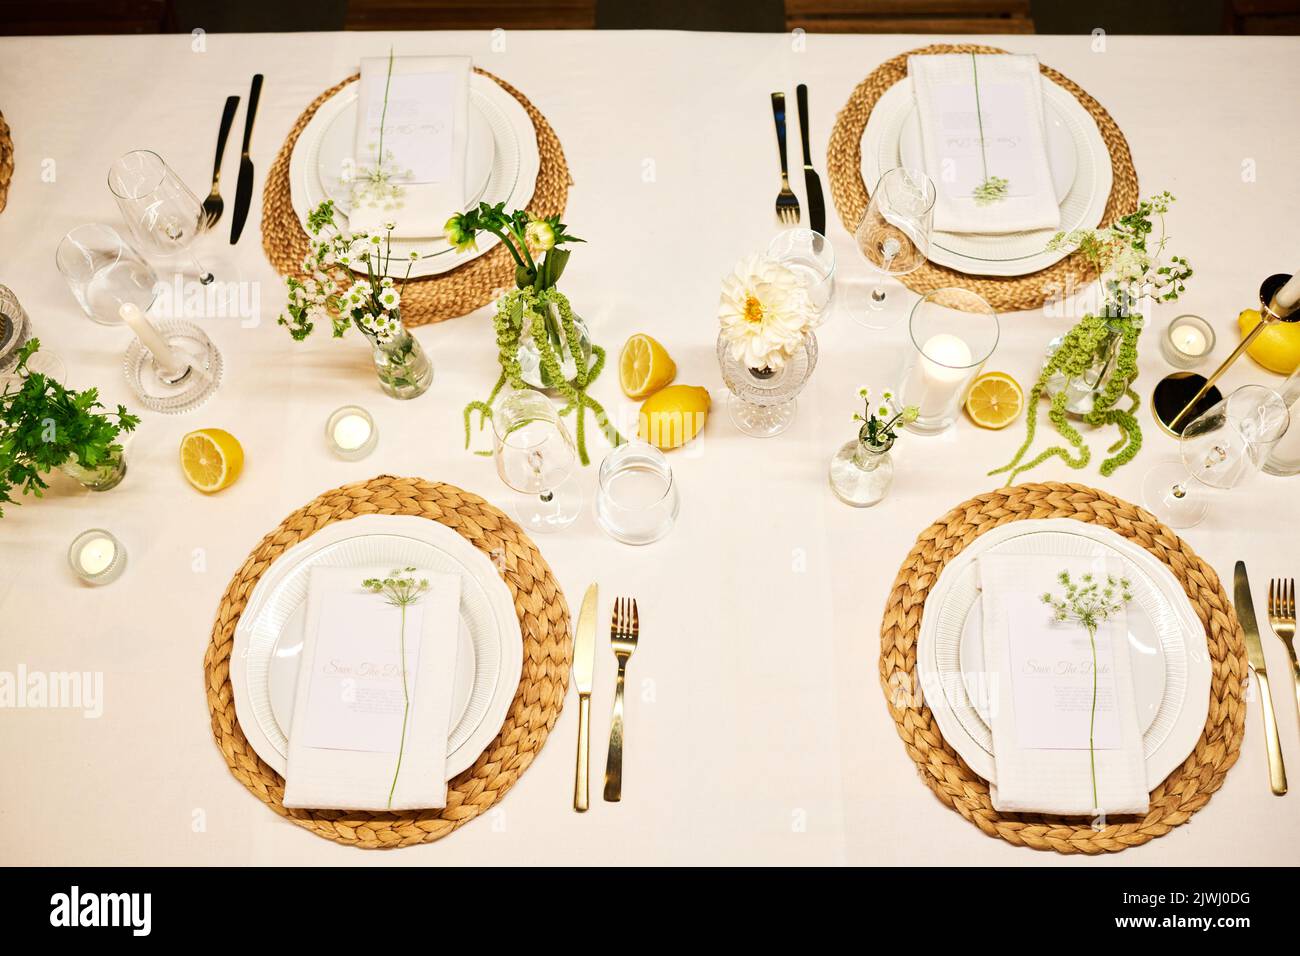 Draufsicht auf einen Teil des servierten Esstisches mit Tellern, Servietten, Weinläsern, Zitronen, Blumen und Kerzen, die für die Hochzeitsfeier vorbereitet wurden Stockfoto